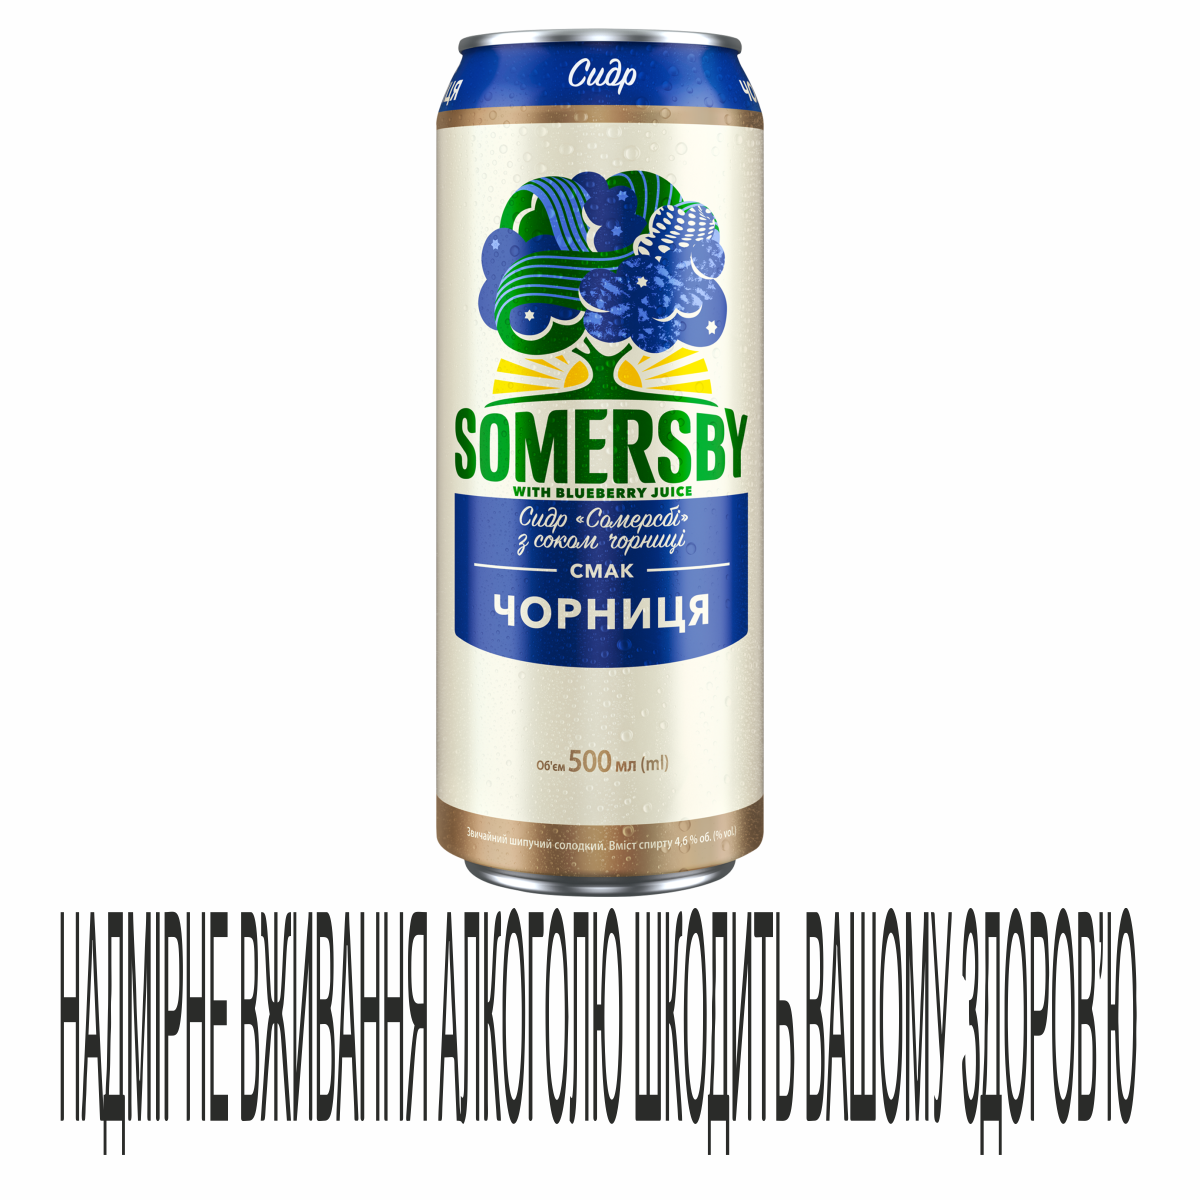 Сидр Somersby 0,5л Чорниця ж/б 4,6%